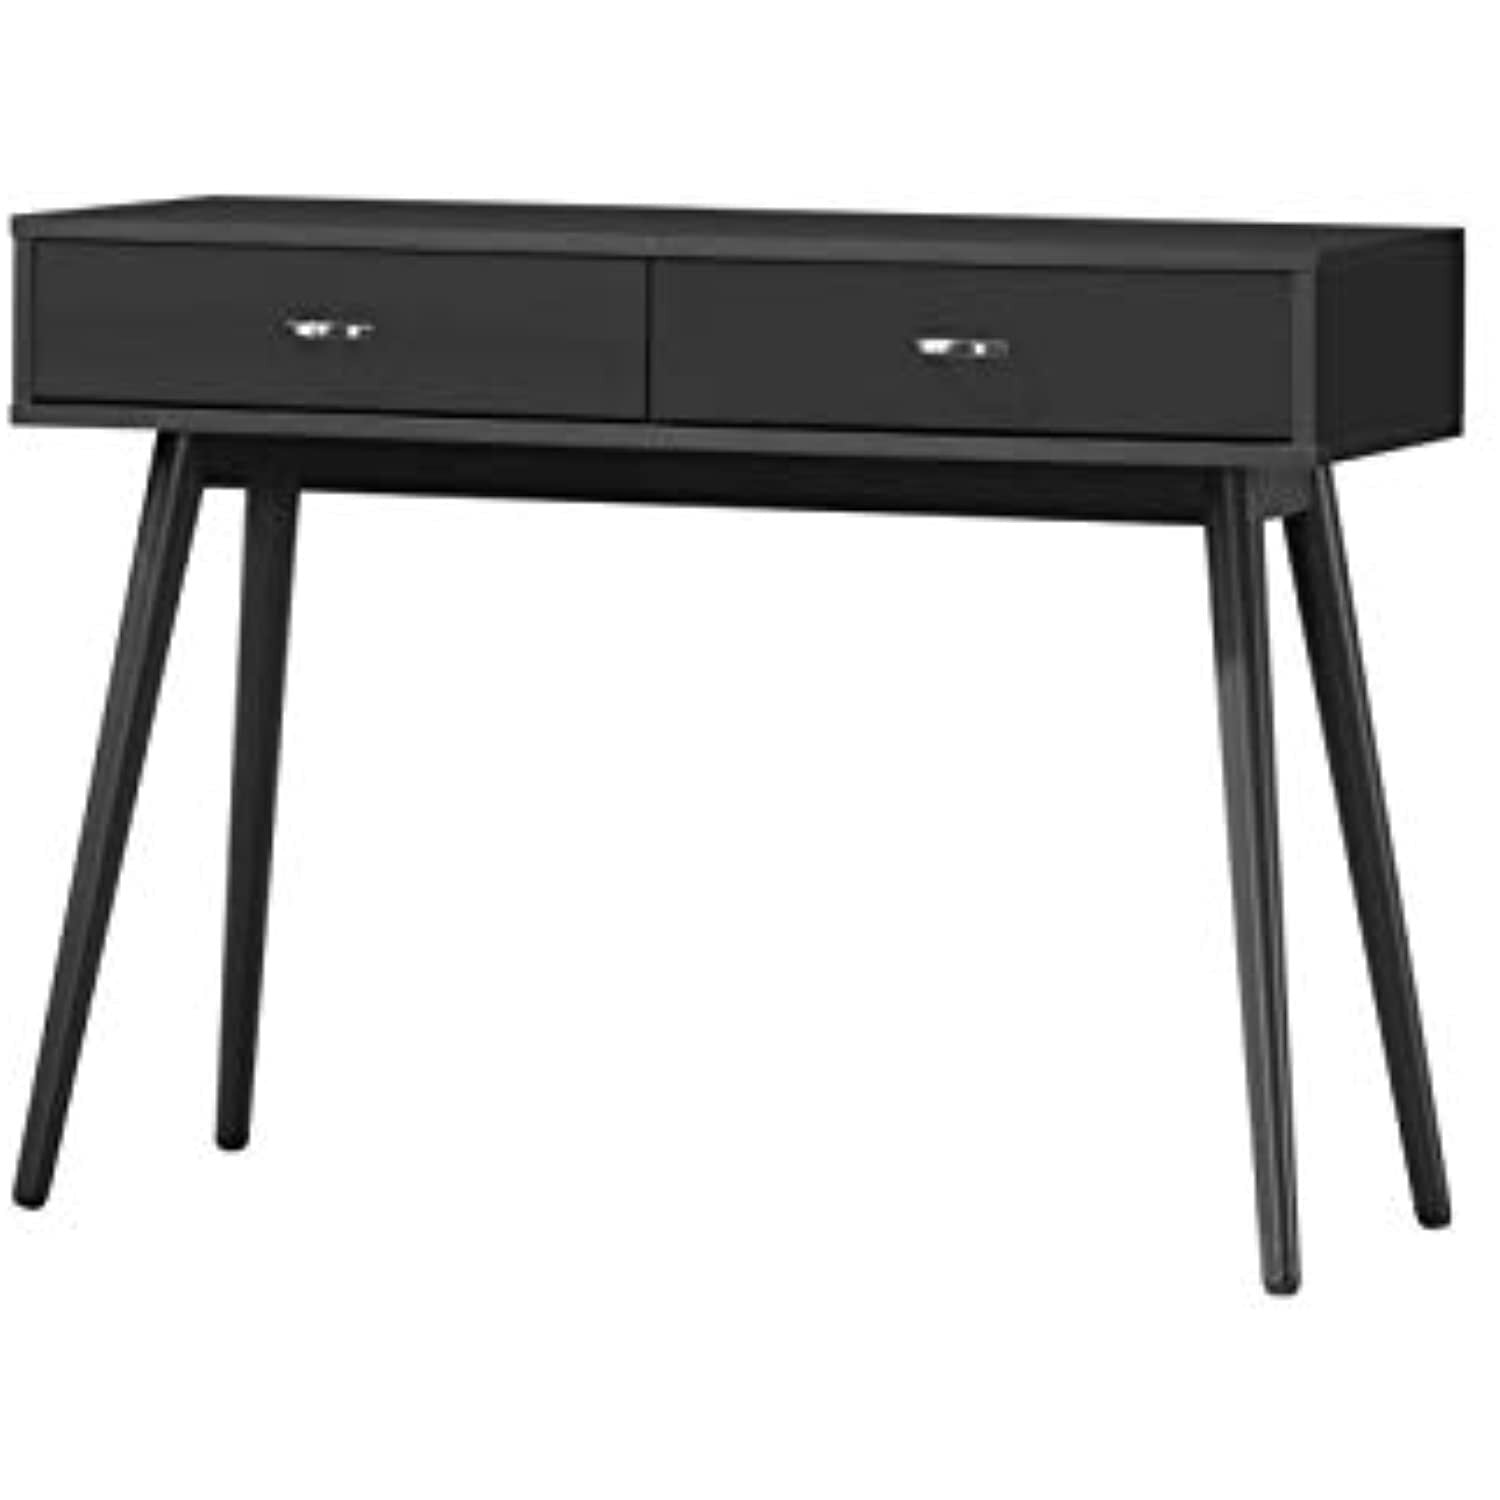 Picture of 4D Concepts 159000 Montage Mid-Century Desk, Black